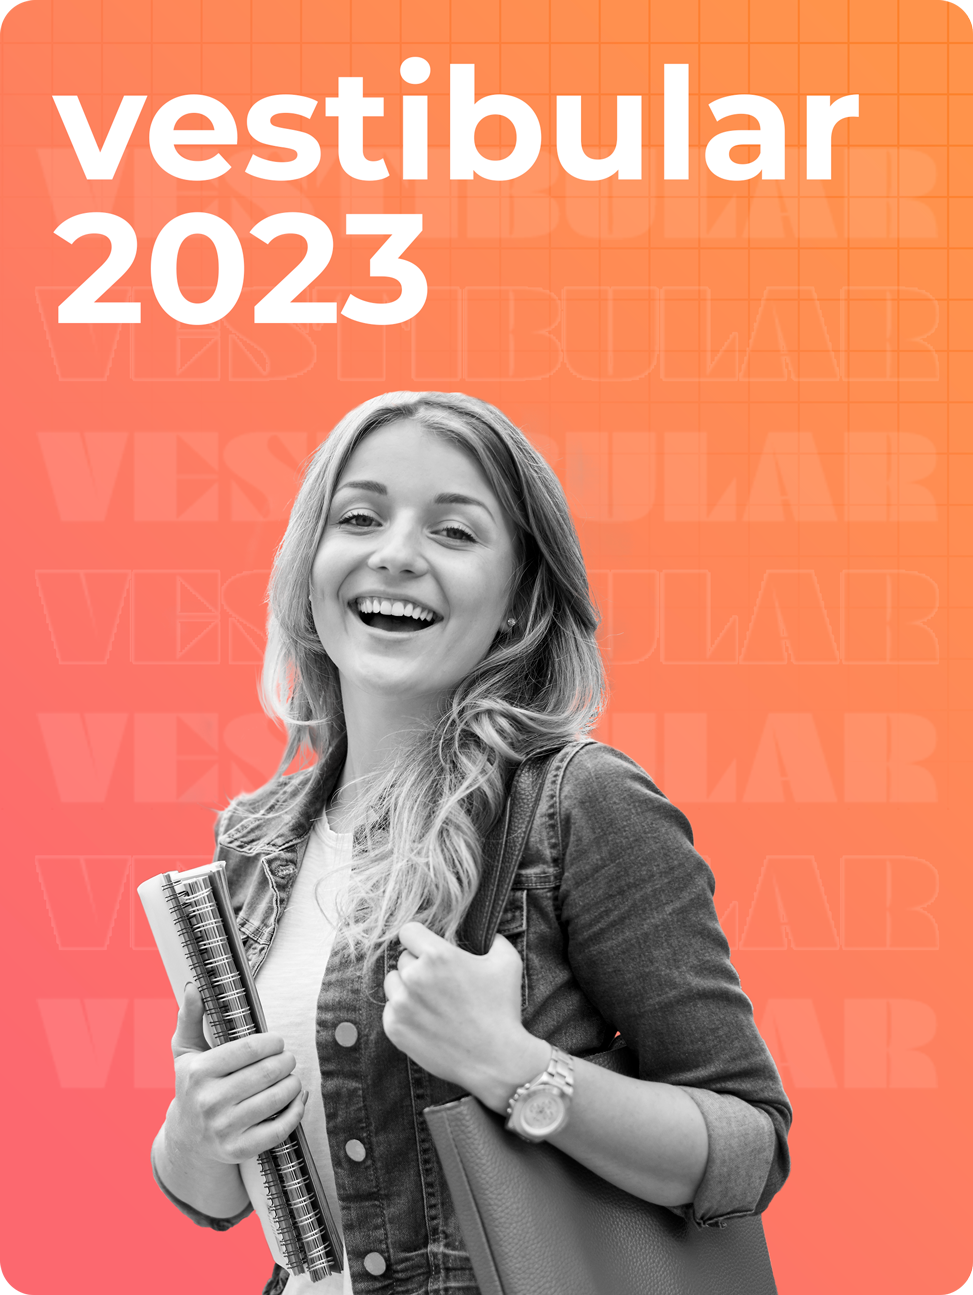 Vestibular 2022